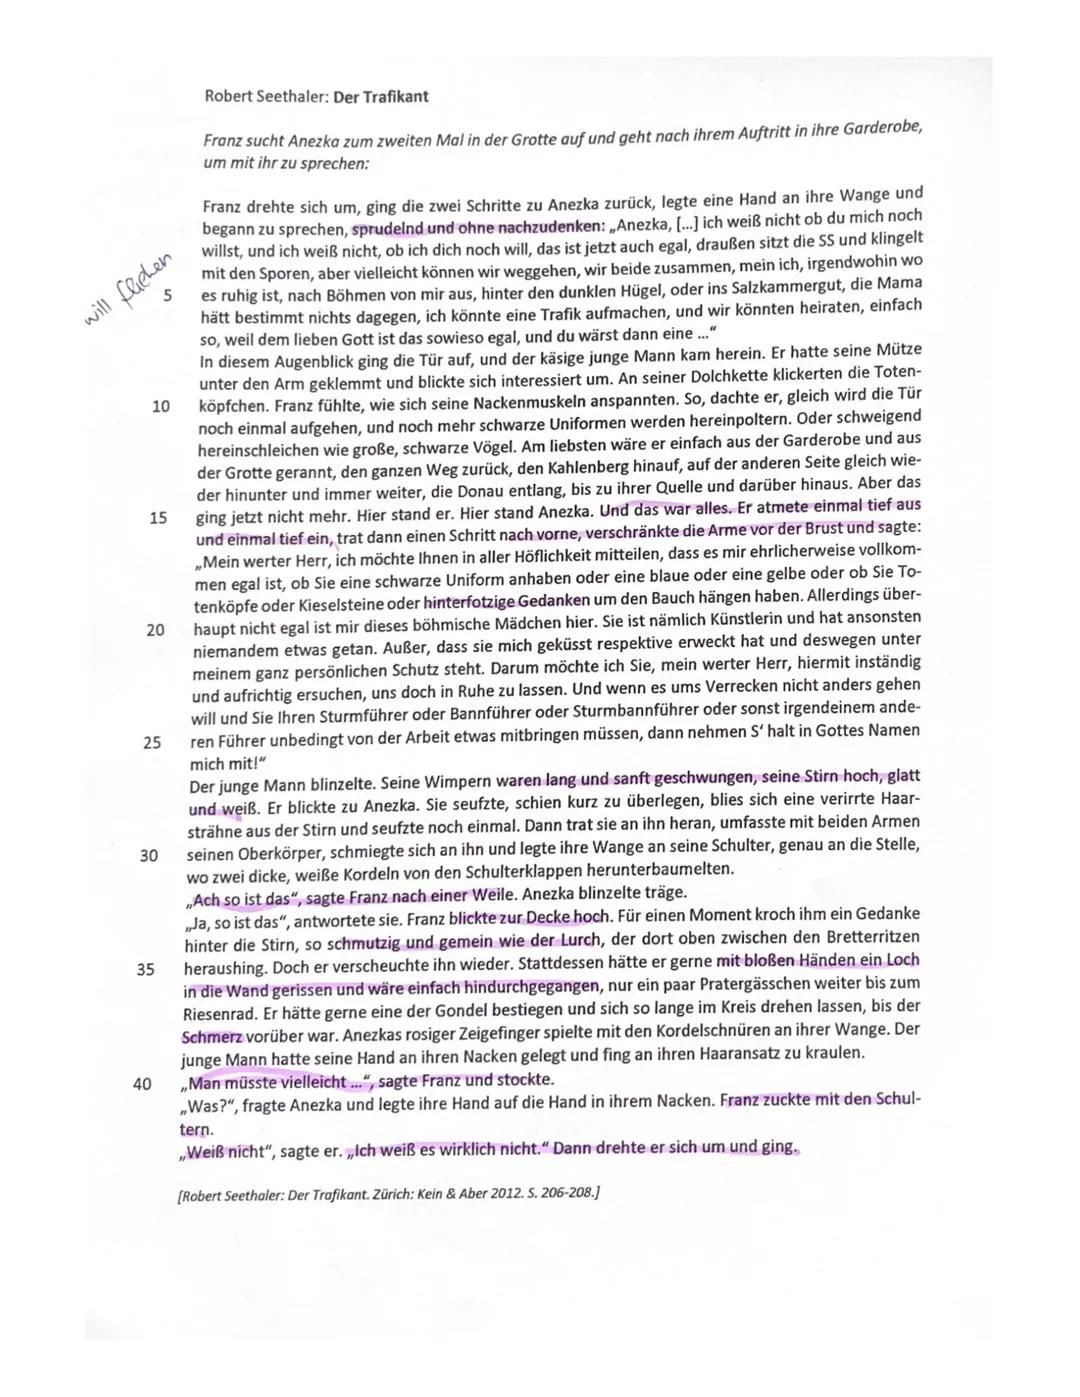 10
15
20
5
25
30
Textgrundlage:
Aufgabentyp IB: Vergleichende Analyse literarischer Texte
Johann Wolfgang Goethe: Die Leiden des jungen Wert